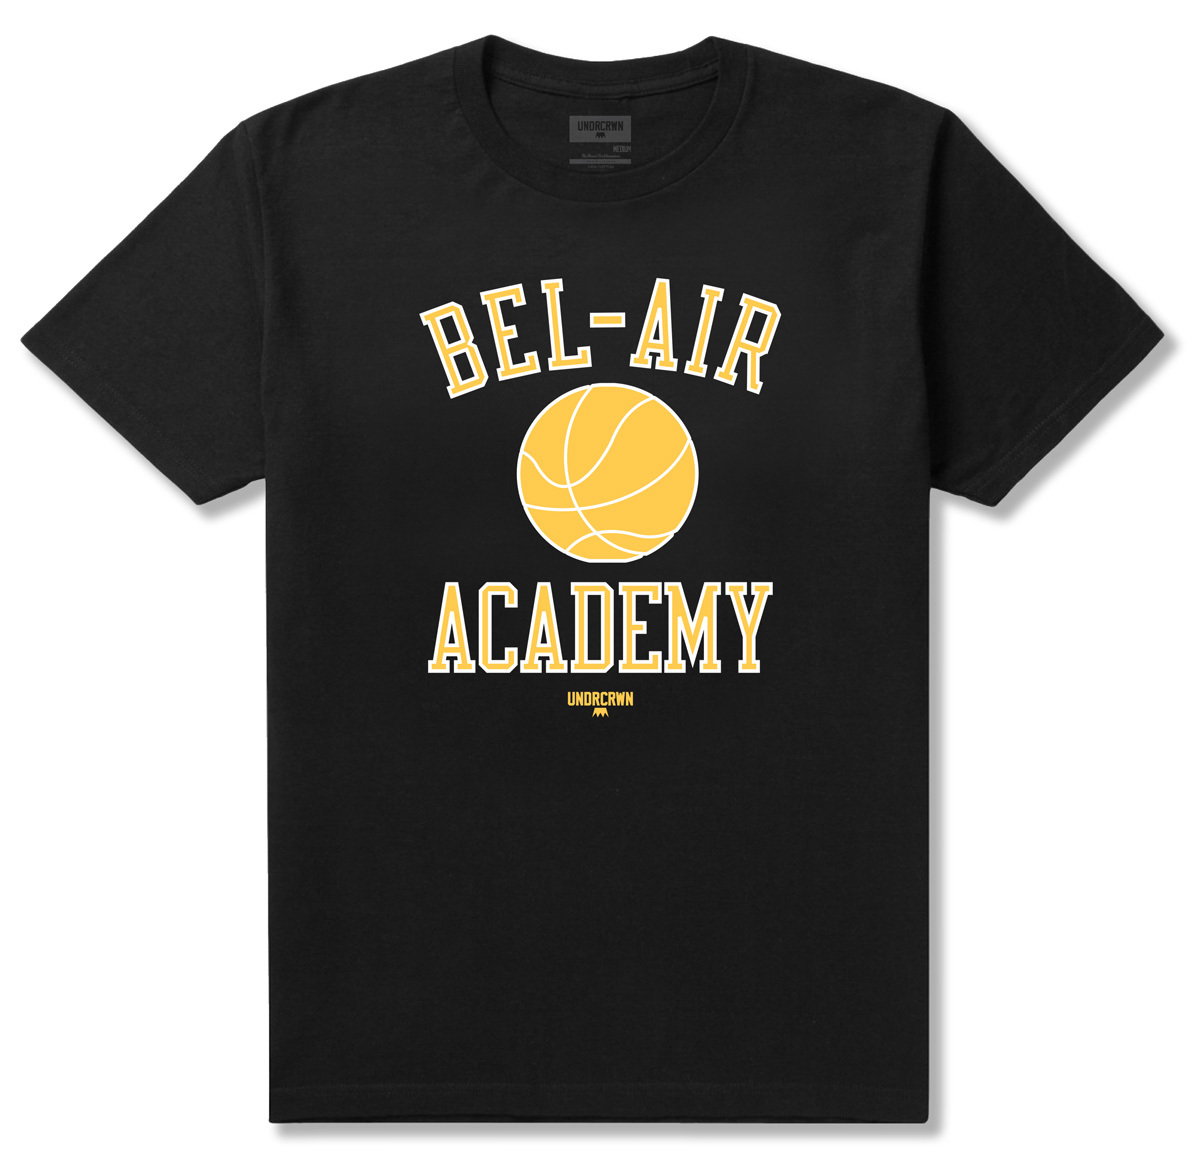 UNDRCRWN x Bel-Air Academy Tee